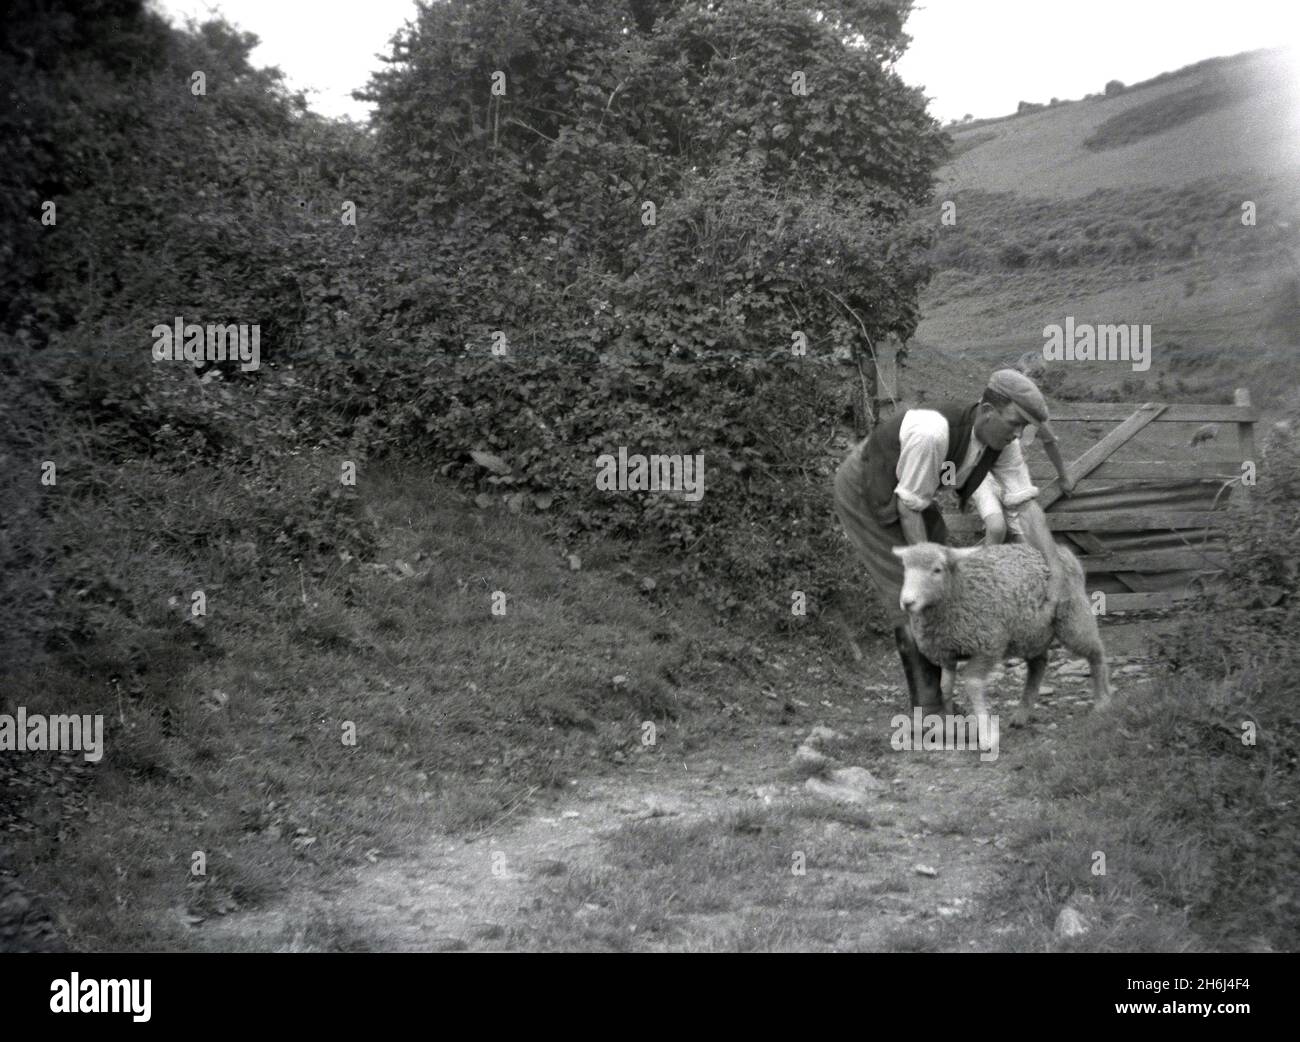 1939, historique, à l'extérieur sur un chemin à côté d'un champ et d'une porte en bois ouverte, un famer avec un mouton lâche, Ringmore, Devon, Angleterre, Royaume-Uni. Banque D'Images